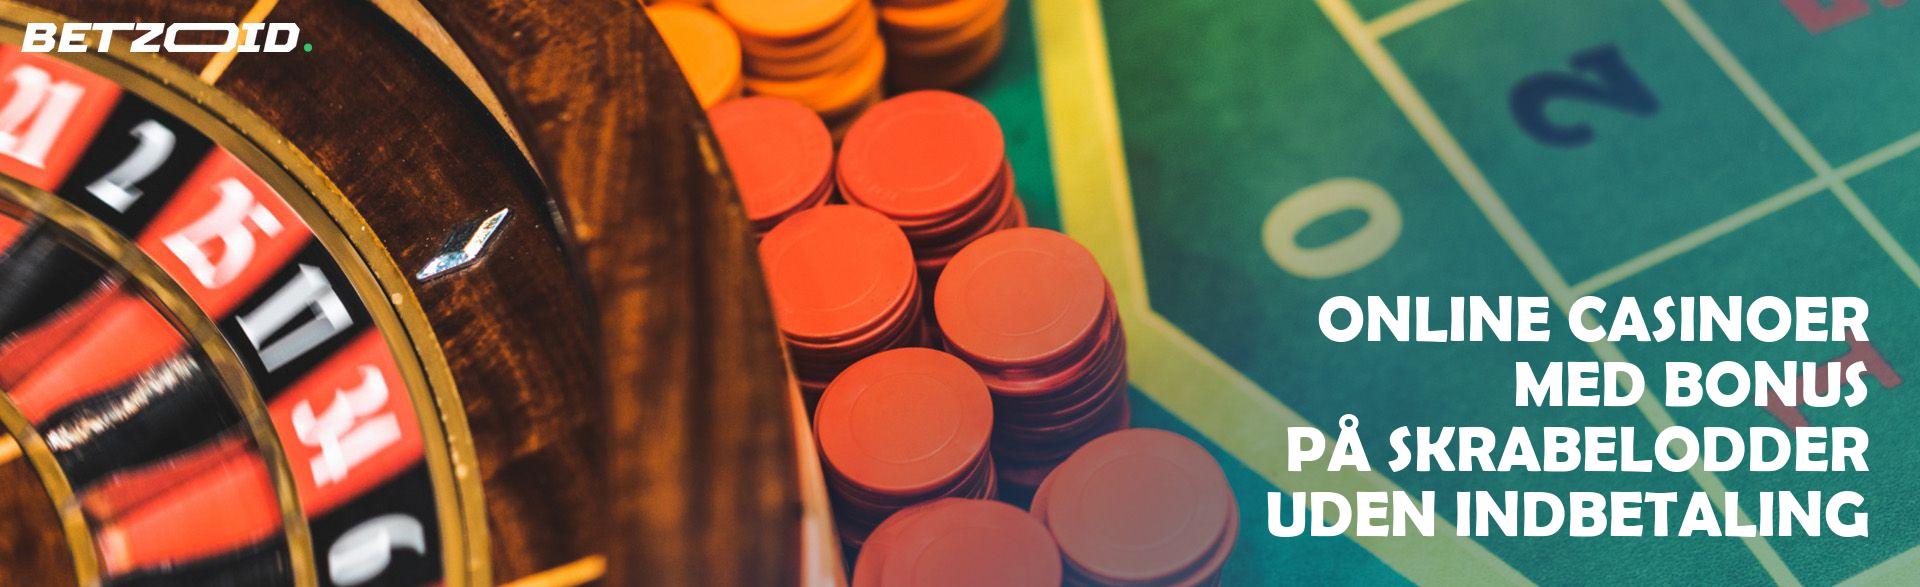 Online Casinoer med Bonus på Skrabelodder uden Indbetaling.